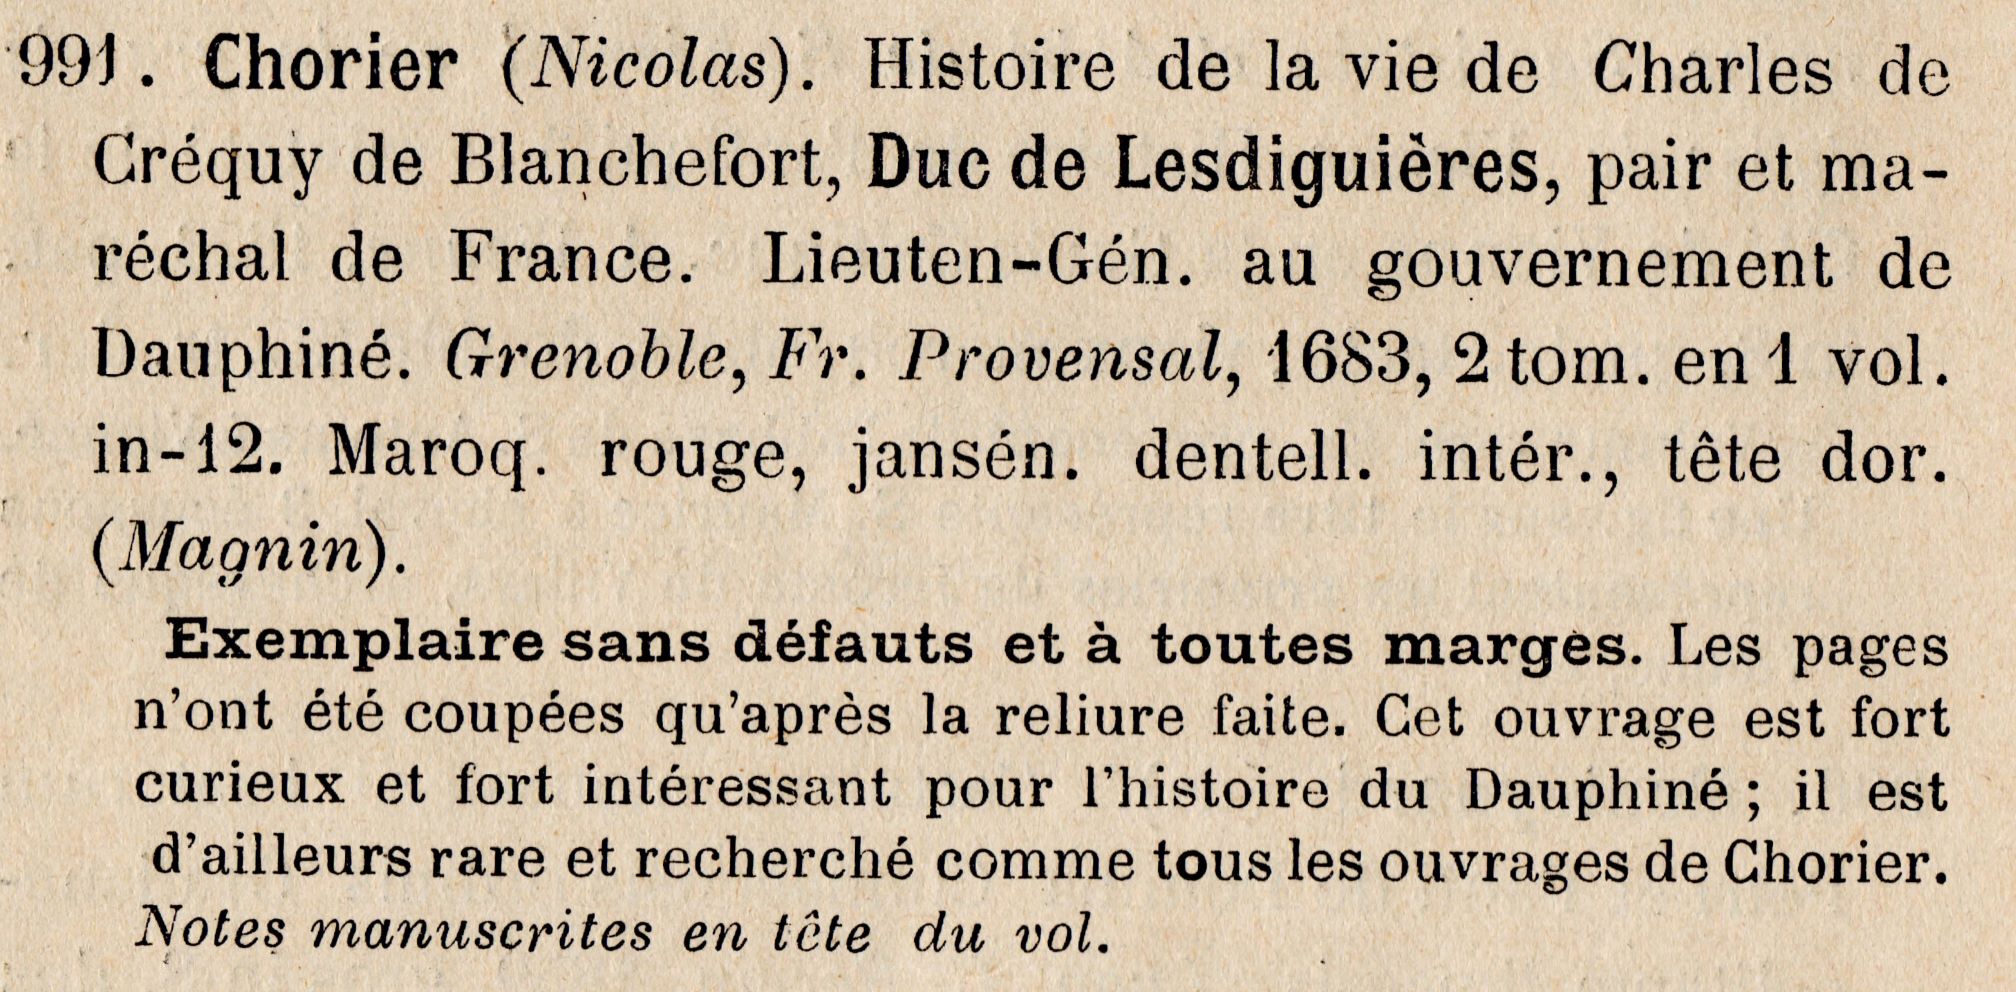 Histoire de la vie de Charles de Créquy de Blanchefort, Duc de Lesdiguières, Nicolas Chorier : notes de Joseph Nouvellet